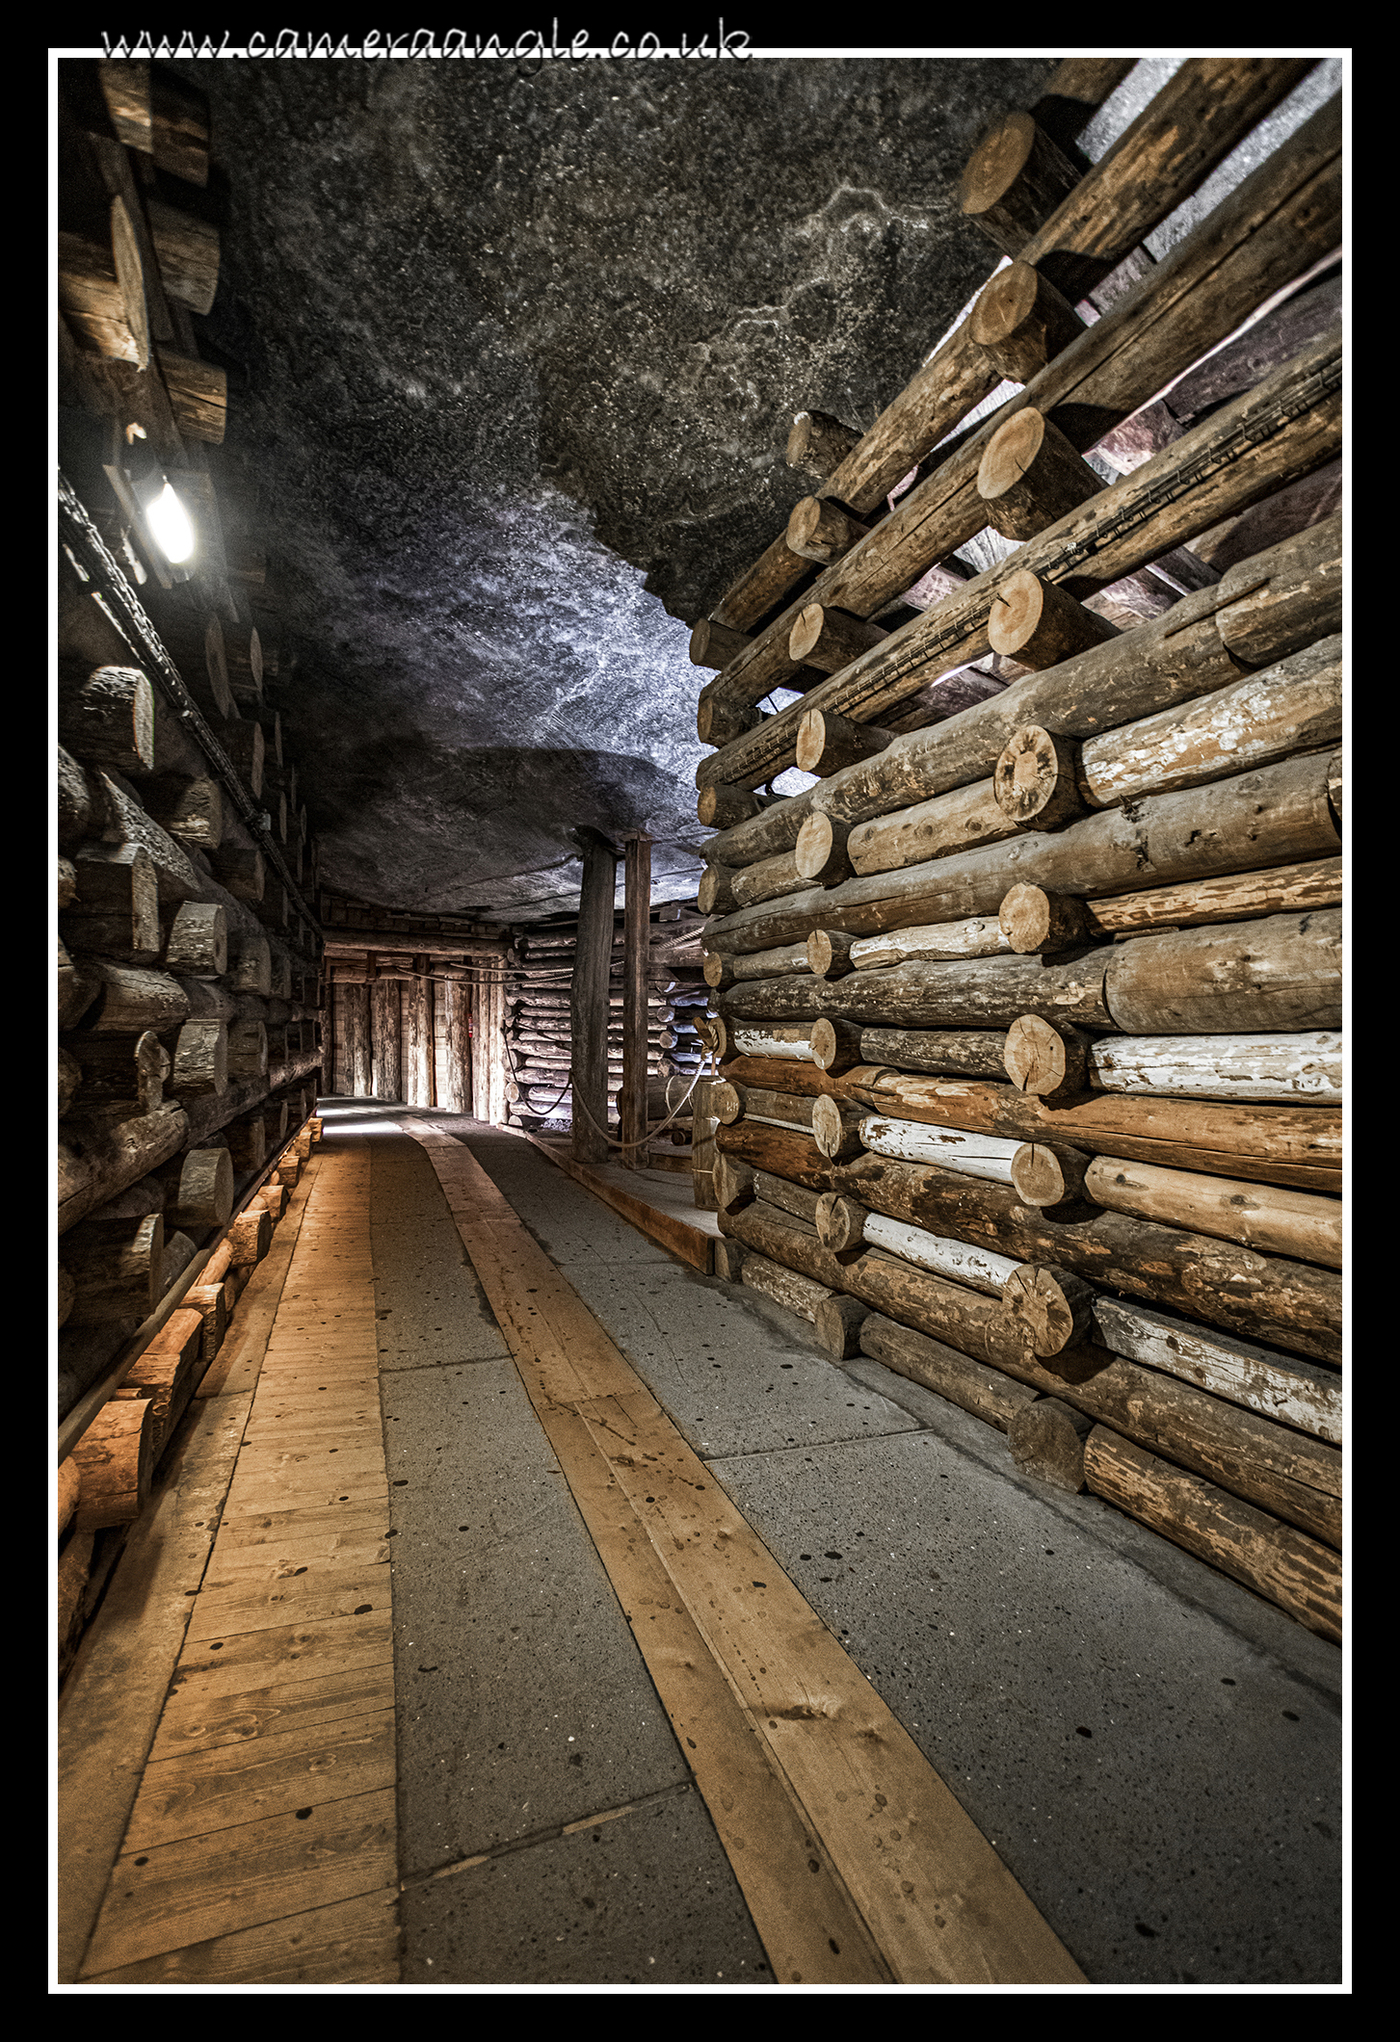 Wieliczka Salt Mine Tunnel
Keywords: Wieliczka Salt Mine 2019 Krakow Tunnel